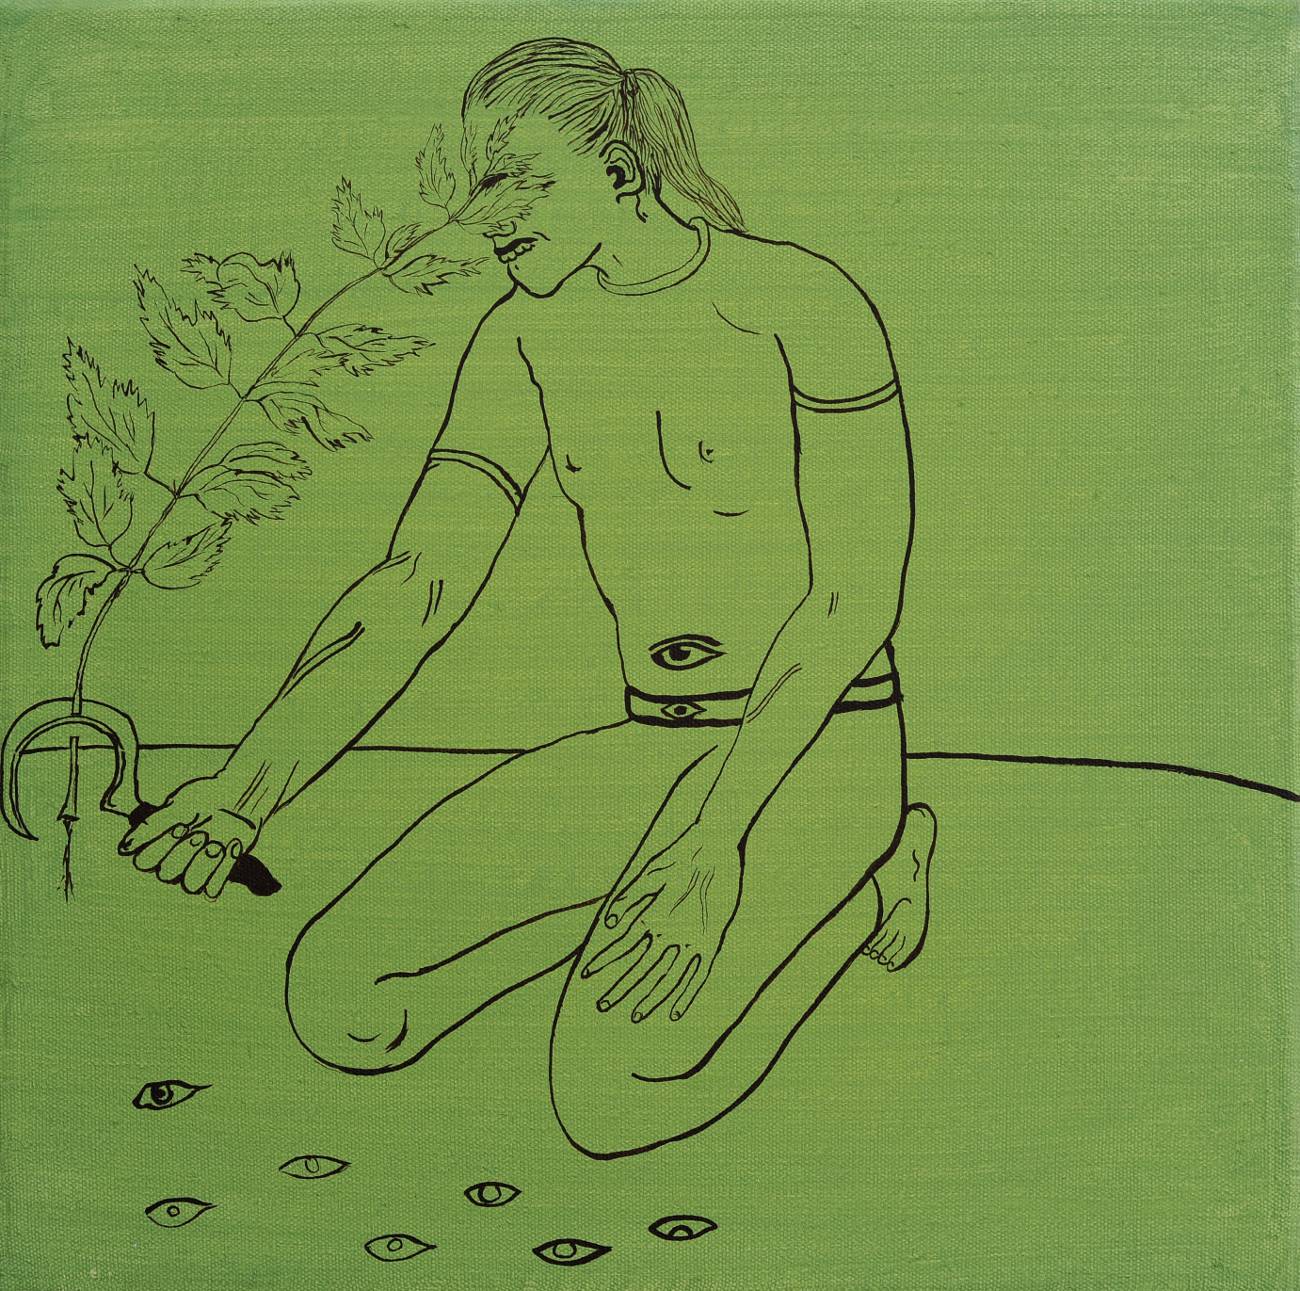 Jan Karpíšek: With Nettle Against Head, acryl on canvas, 50x50 cm, 2011